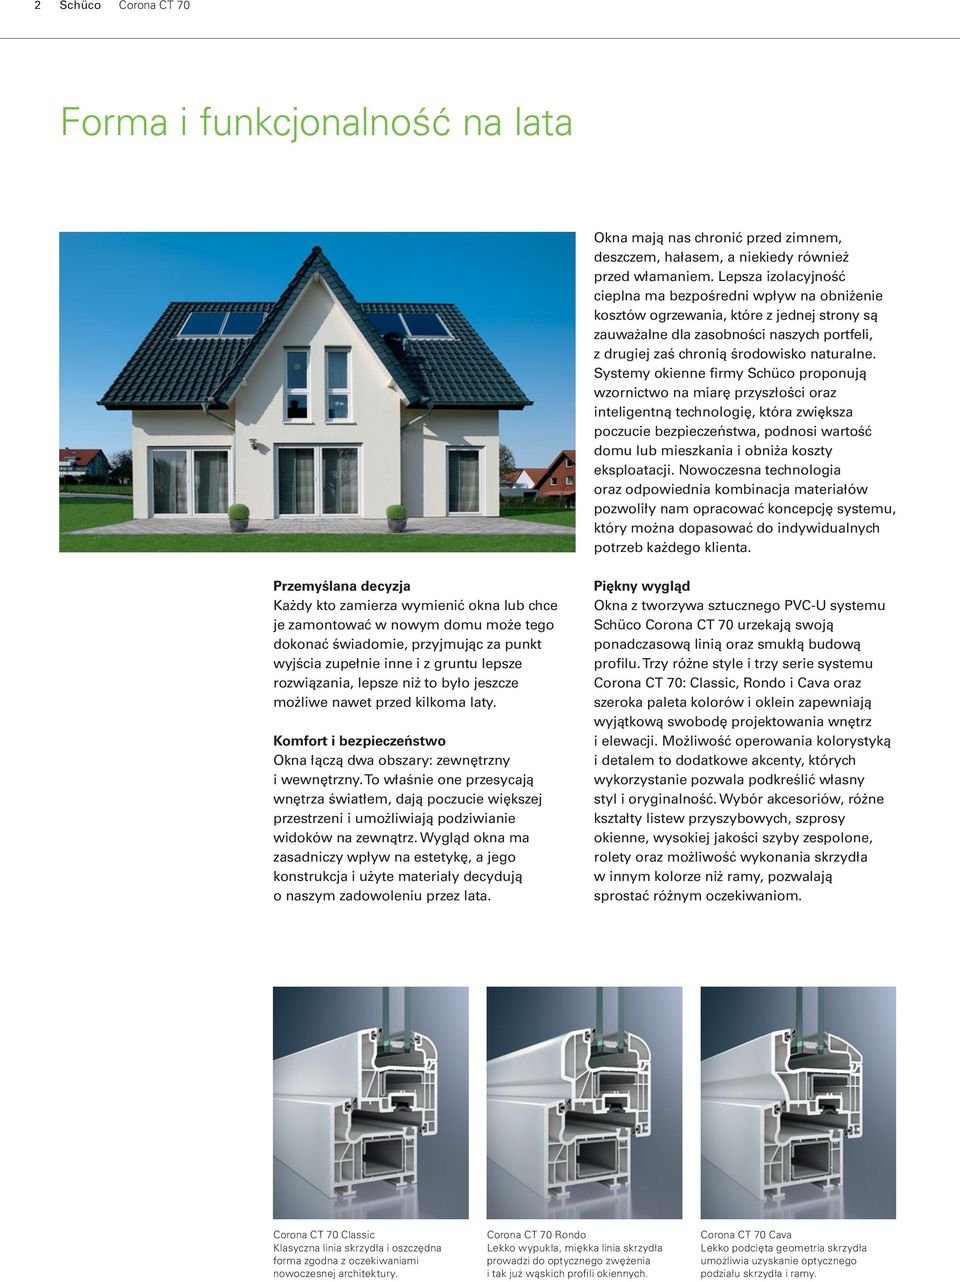 Systemy okienne firmy Schüco proponują wzornictwo na miarę przyszłości oraz inteligentną technologię, która zwiększa poczucie bezpieczeństwa, podnosi wartość domu lub mieszkania i obniża koszty